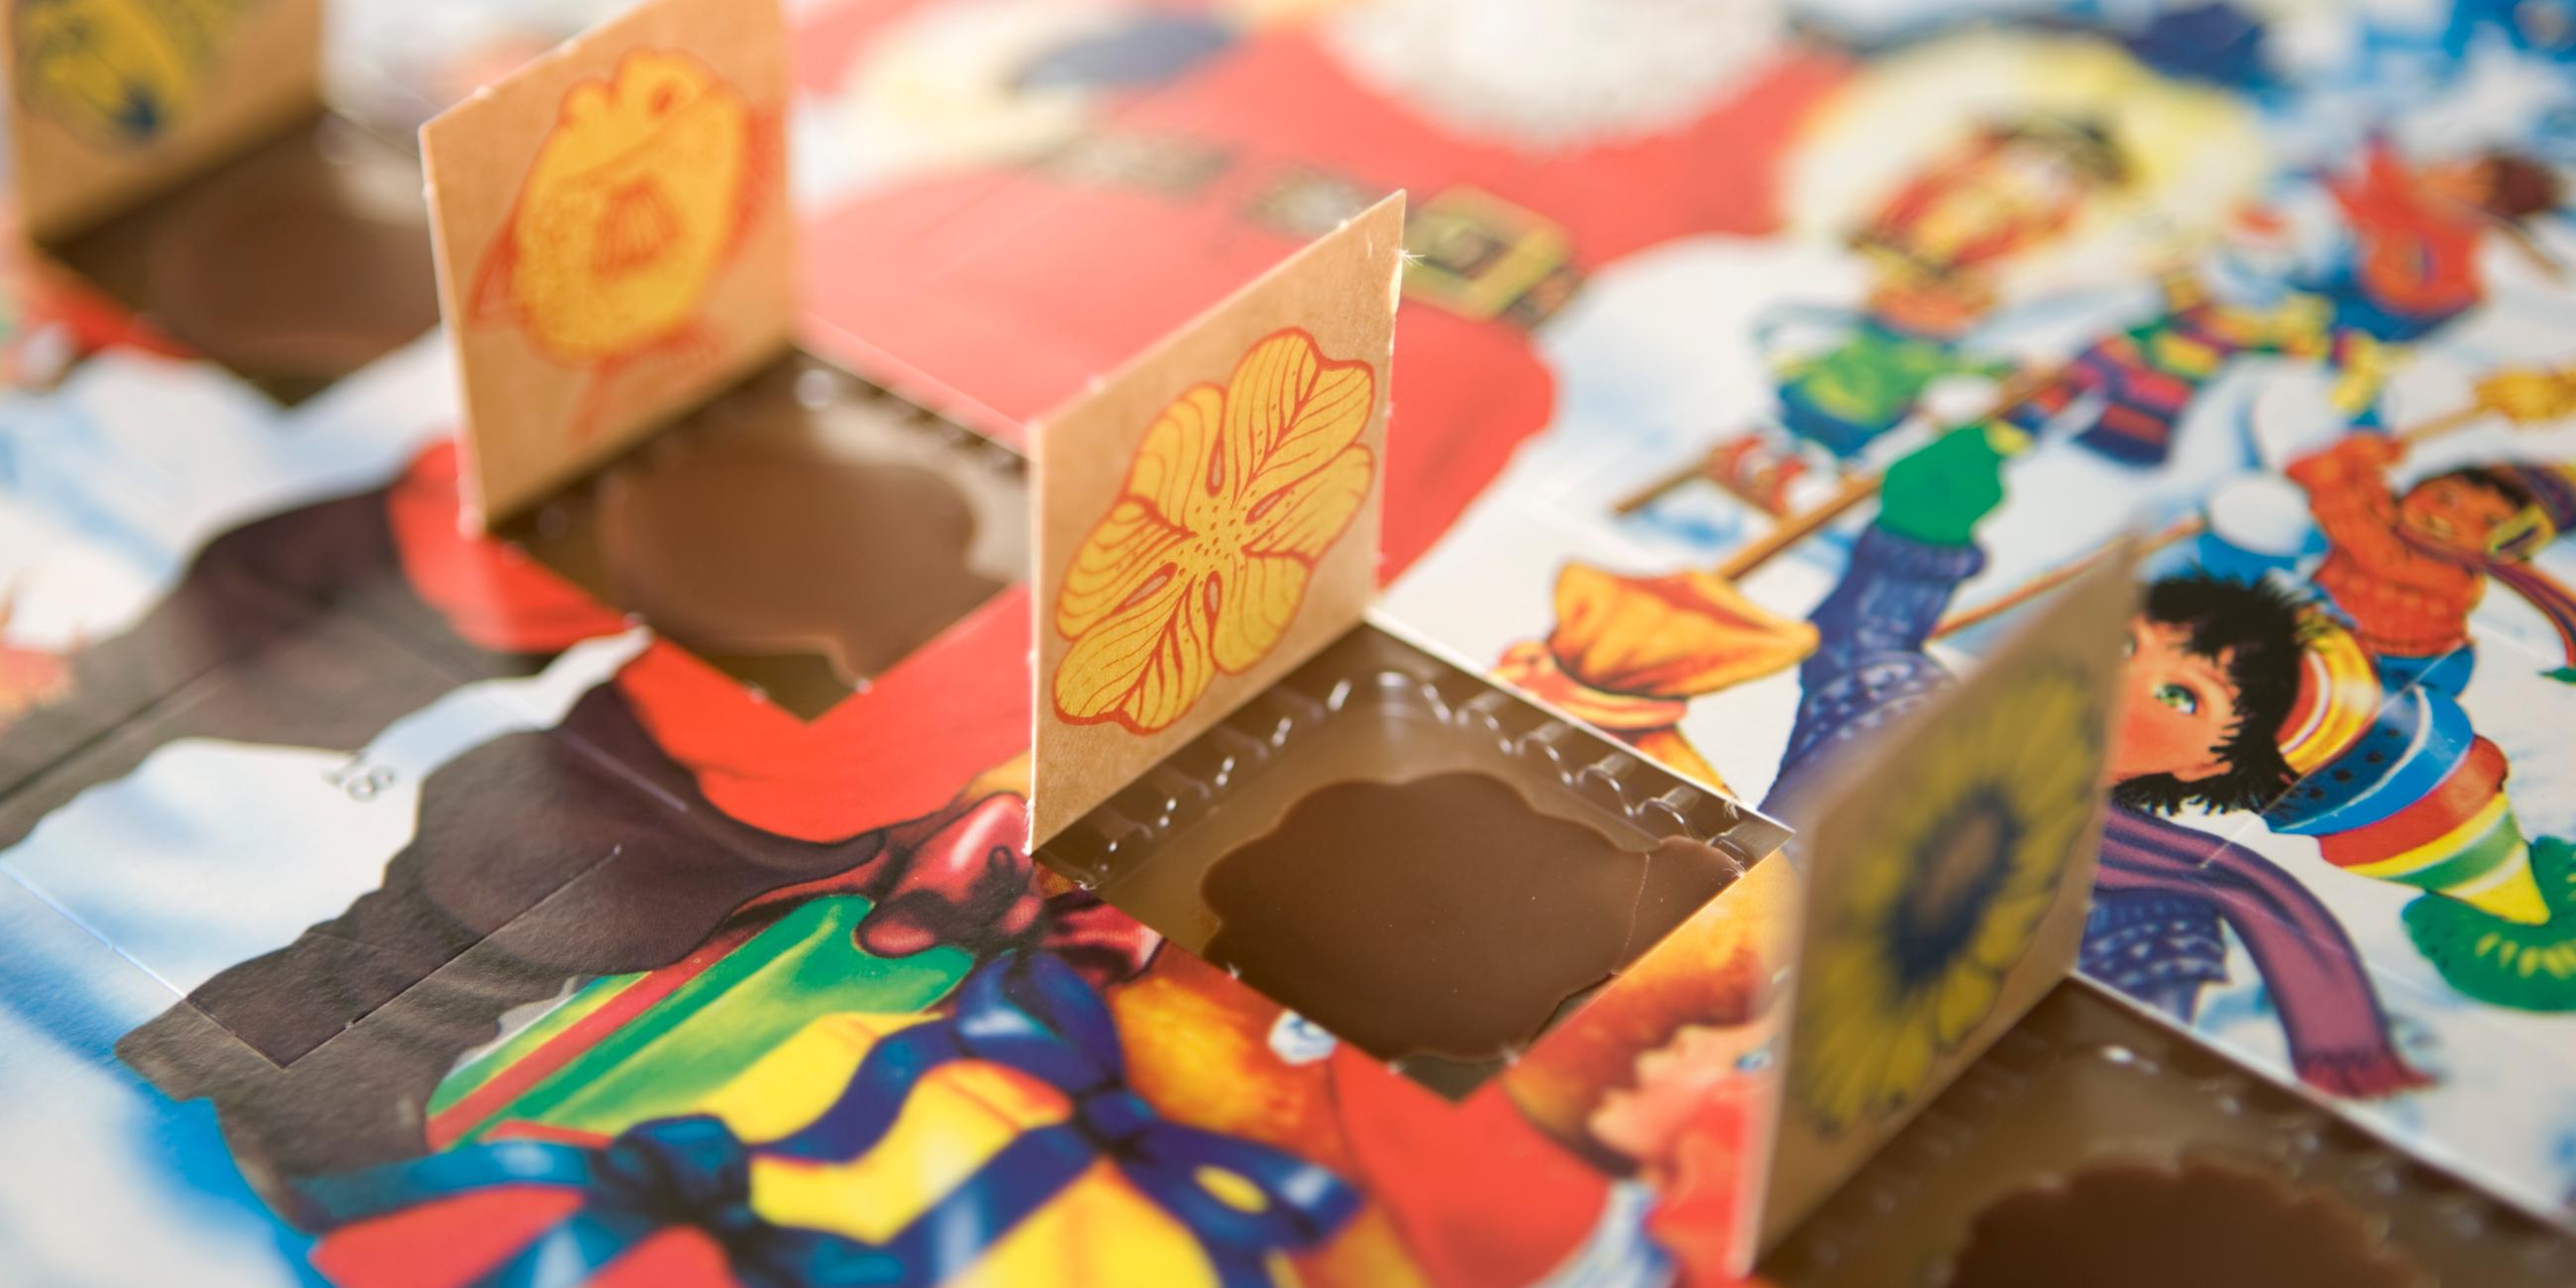 Man sieht einen Adventskalender mit winterlichem Motiv an dem vier Türchen nebeneinander geöffnet sind. Die kleinen Schokoladenmotive liegen noch in ihren Förmchen. 